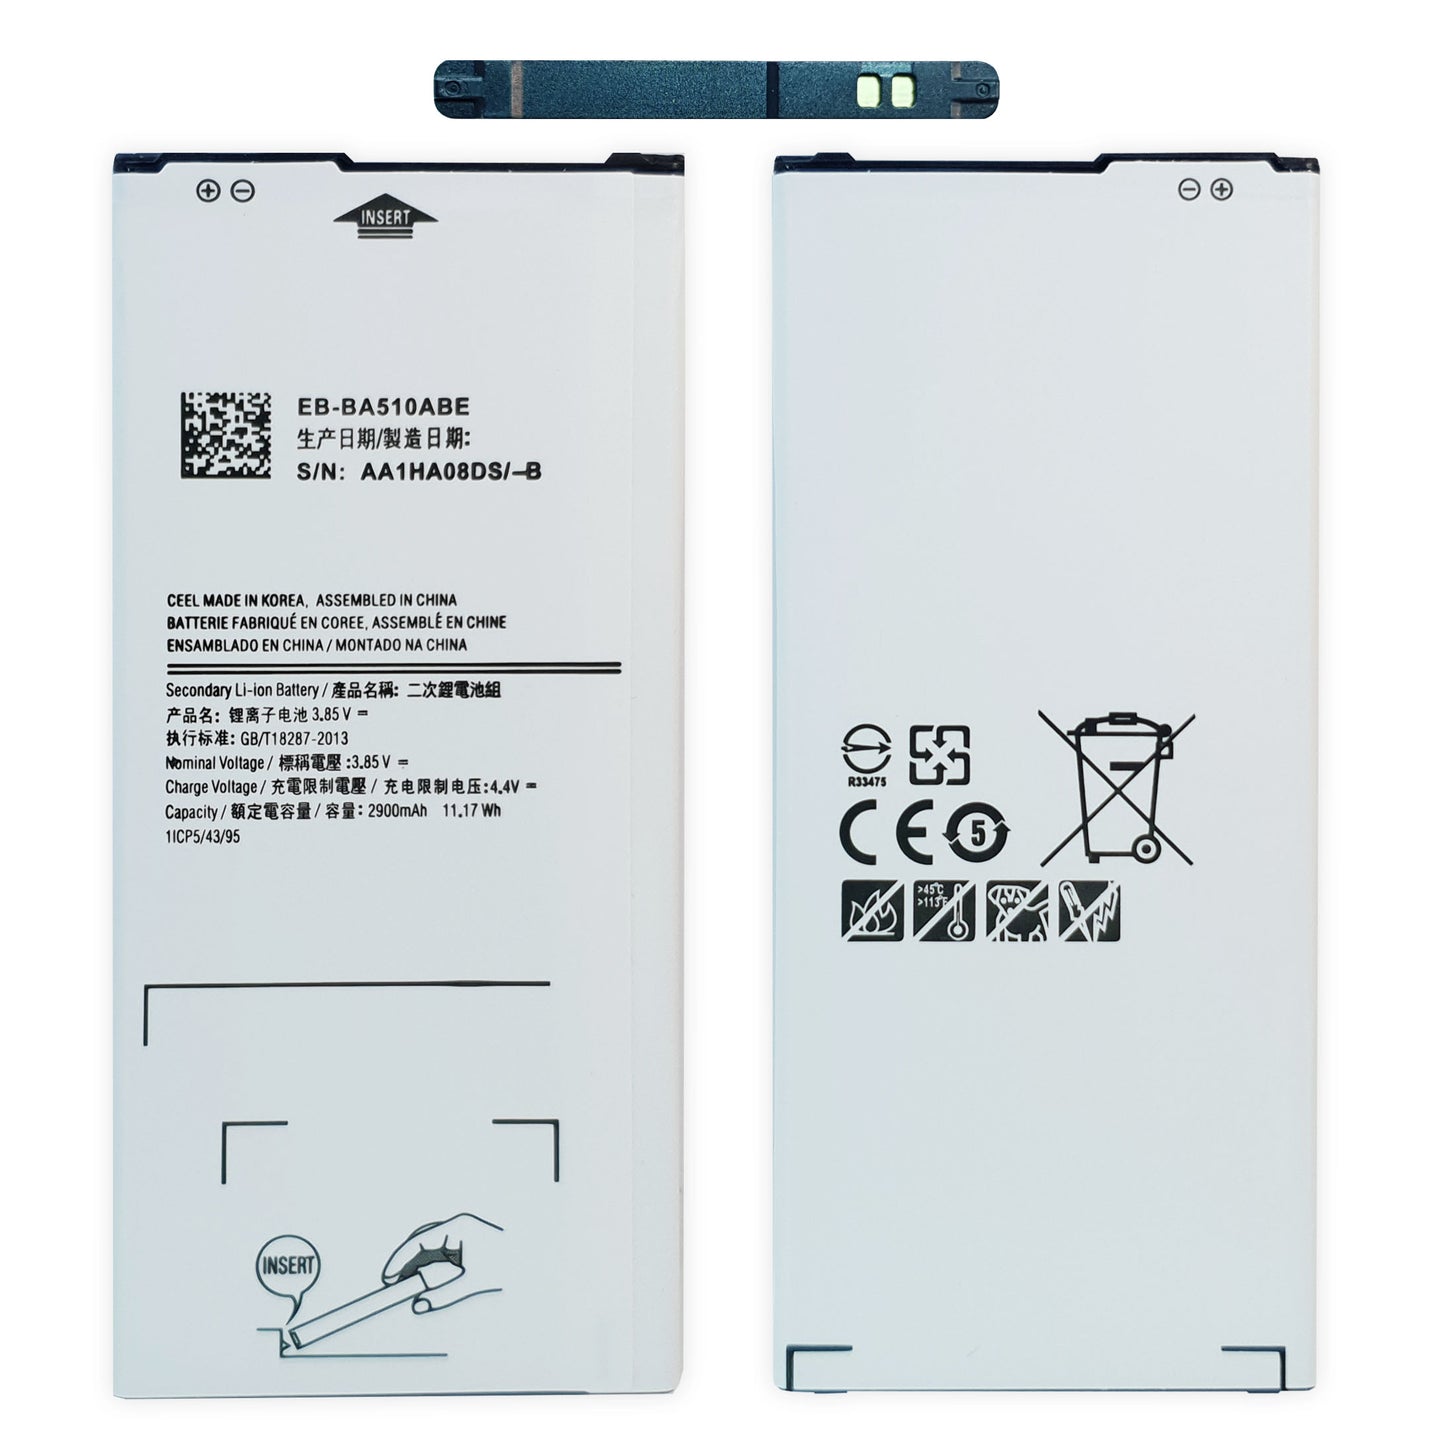 Ersetzen Sie den Akku Ihres Samsung Galaxy A5 2016 (SM-A5100) mit einem neuen, leistungsstarken Ersatzakku von Dinngs.de inklusive Kleberahmen und Pin Nadel.